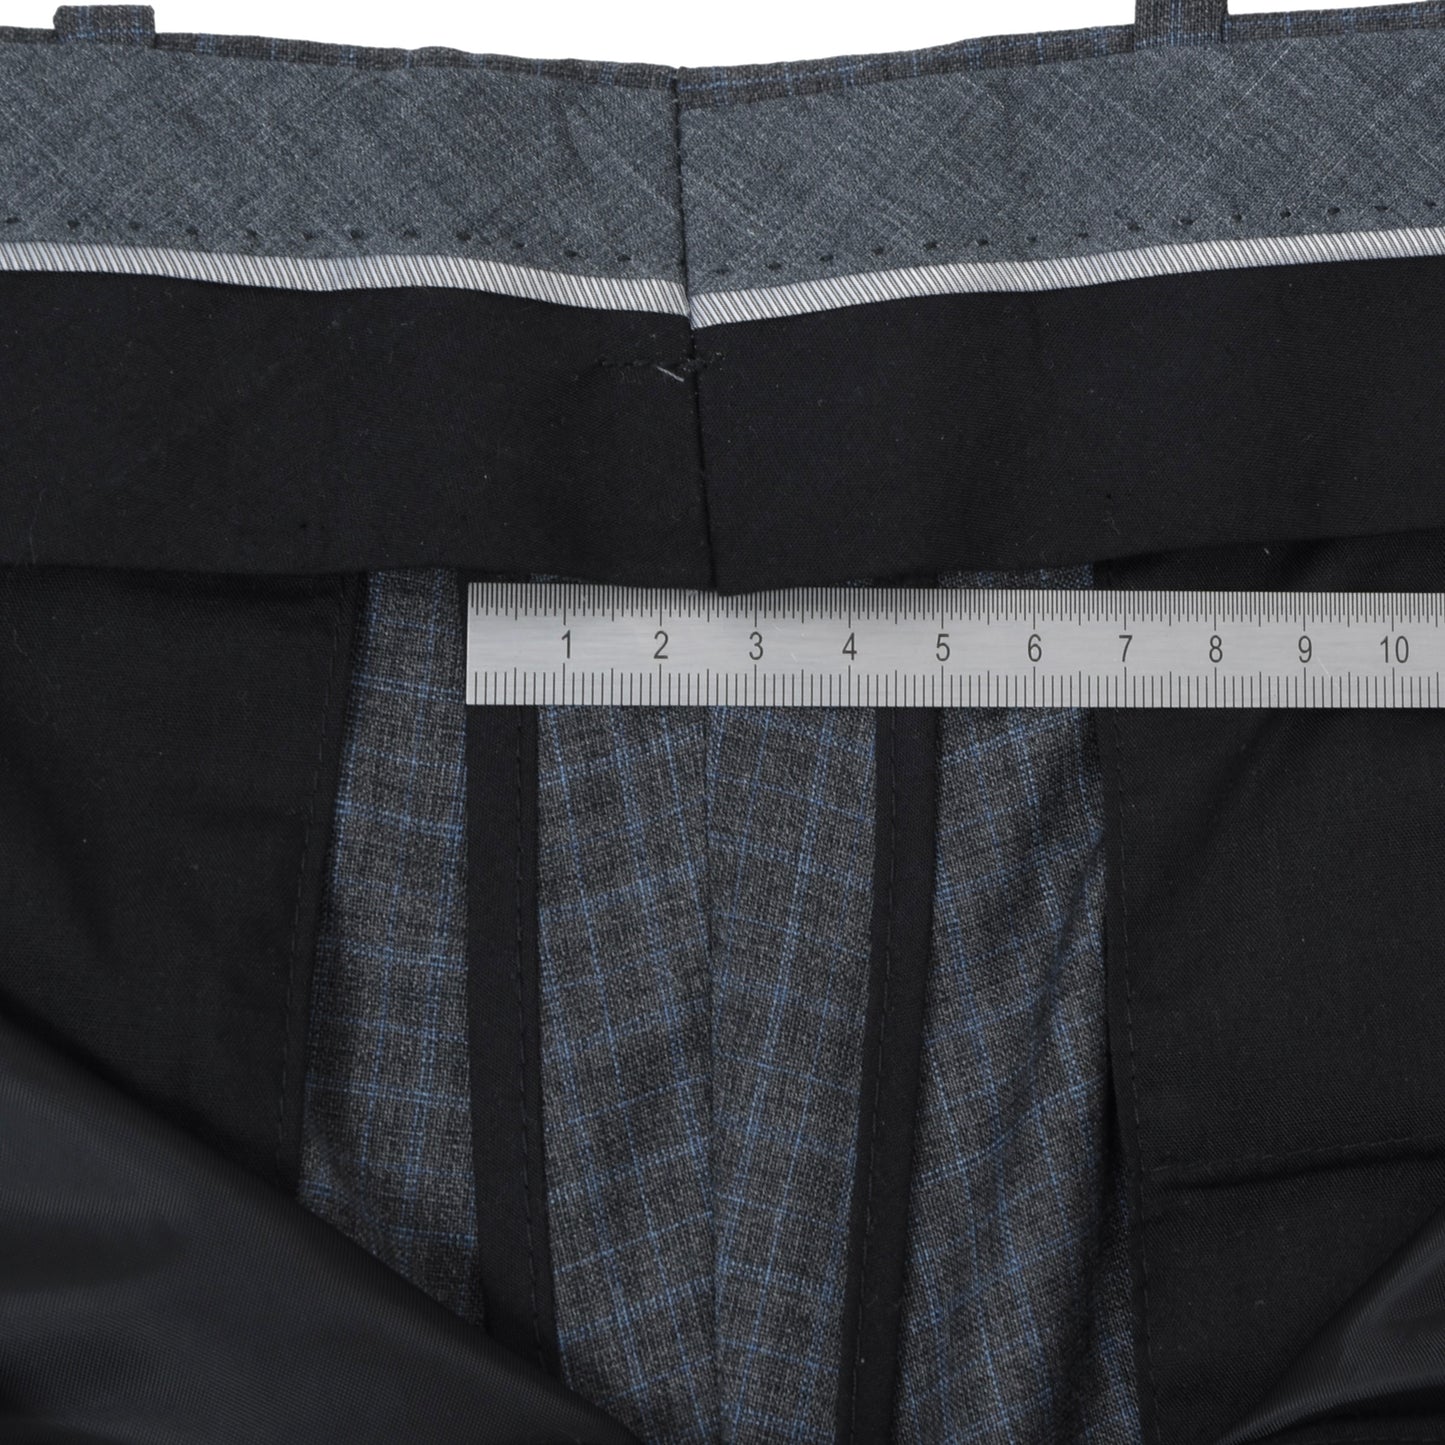 Sturm x  Bäumler Super 110s Wool Suit Size 48 - Grey Plaid